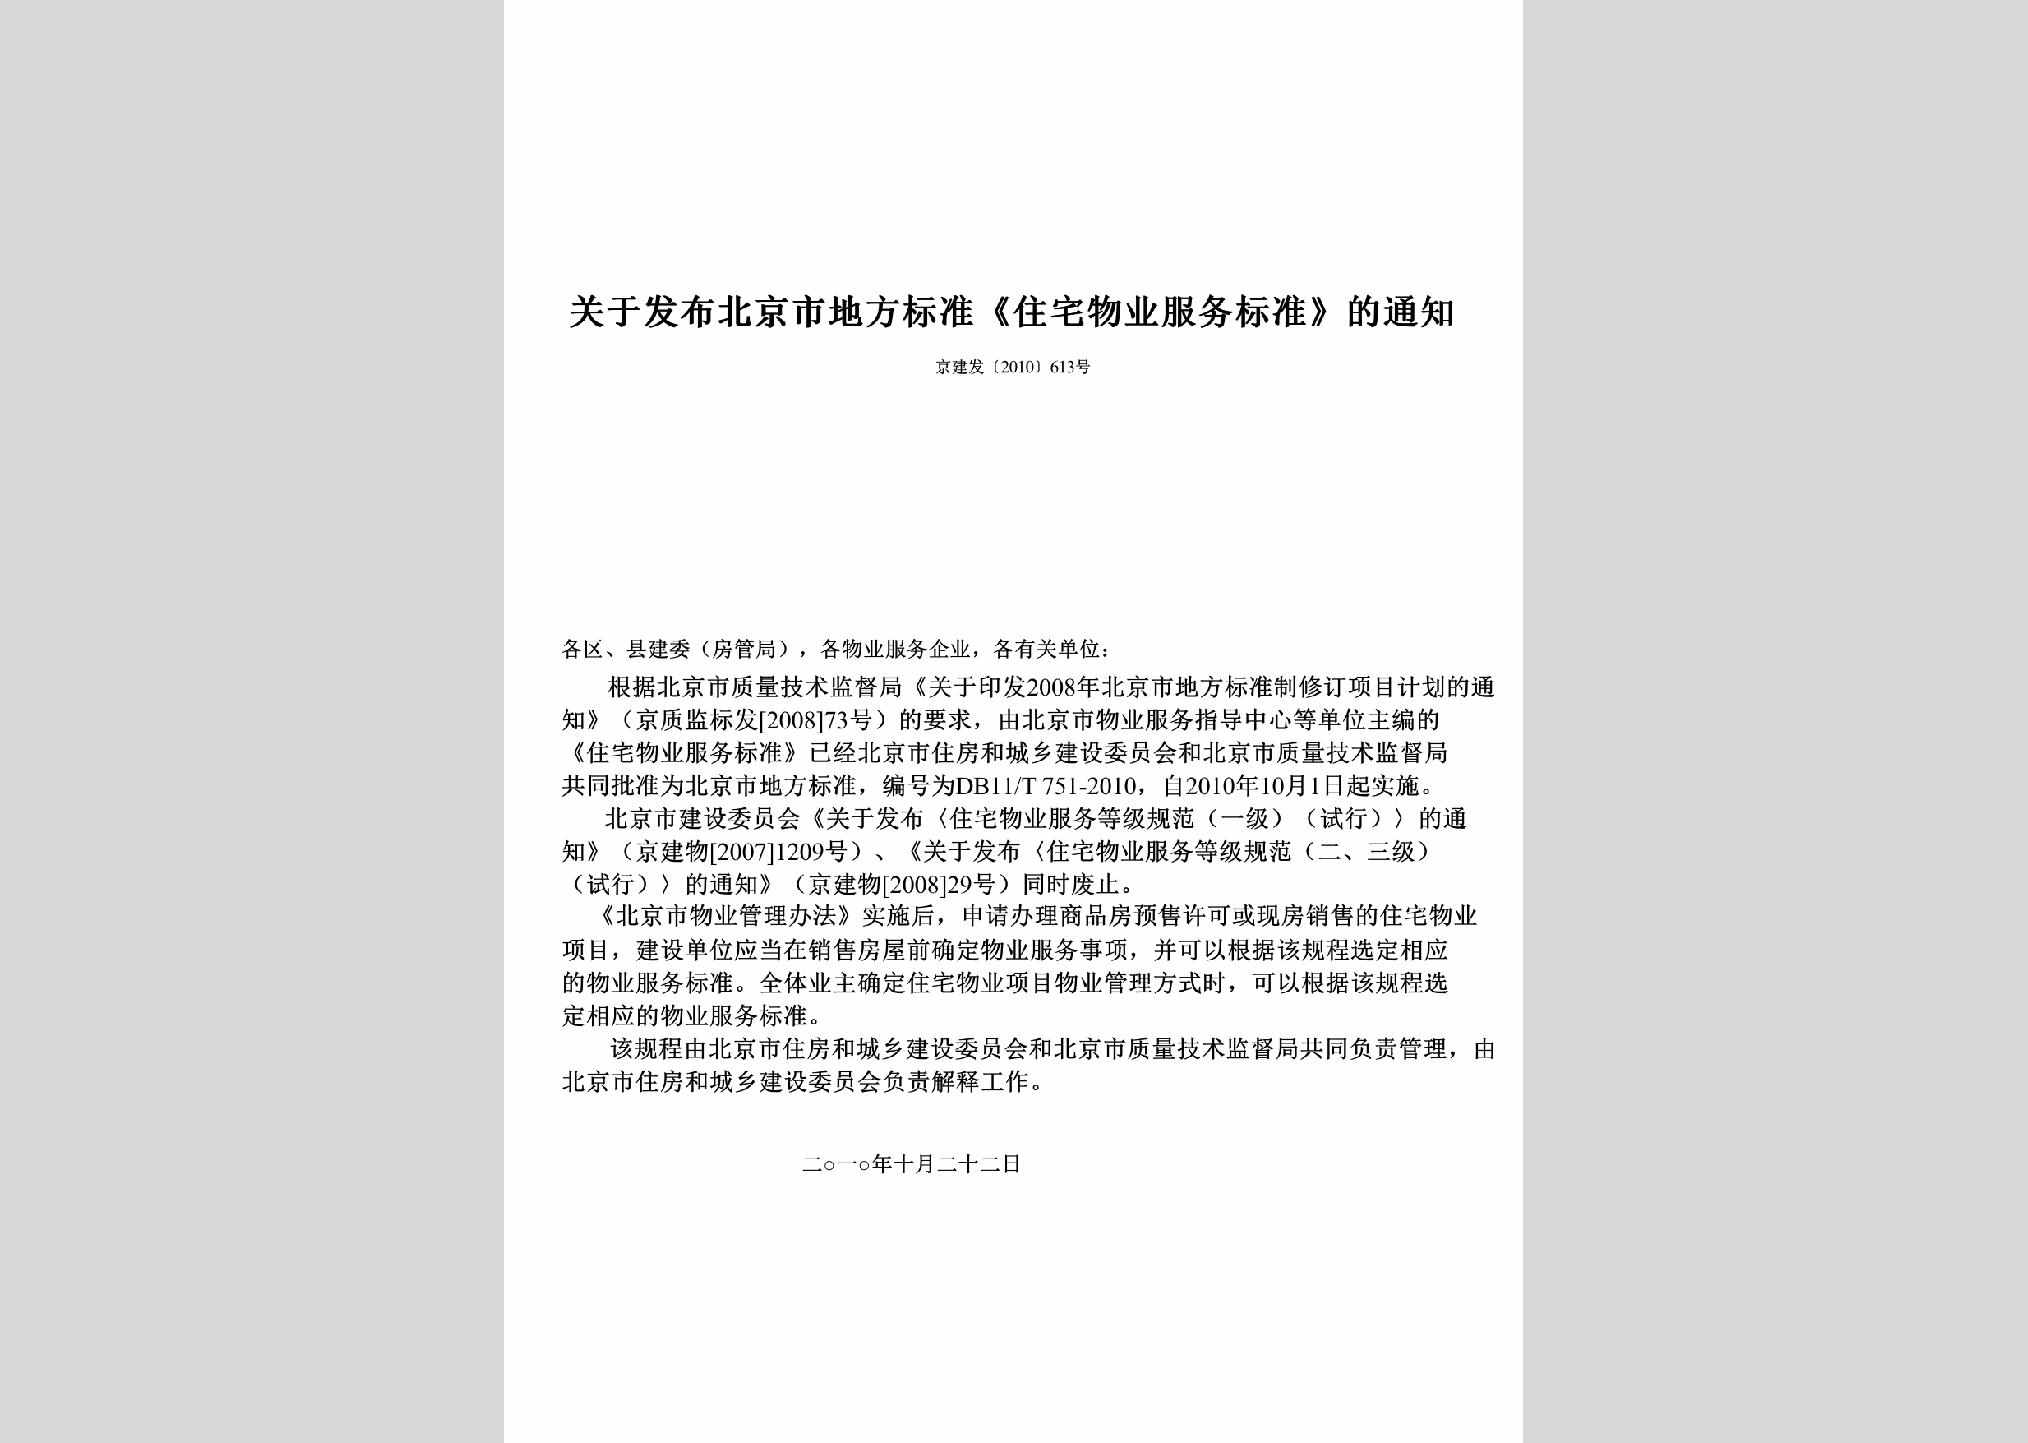 京建发[2010]613号：关于发布北京市地方标准《住宅物业服务标准》的通知